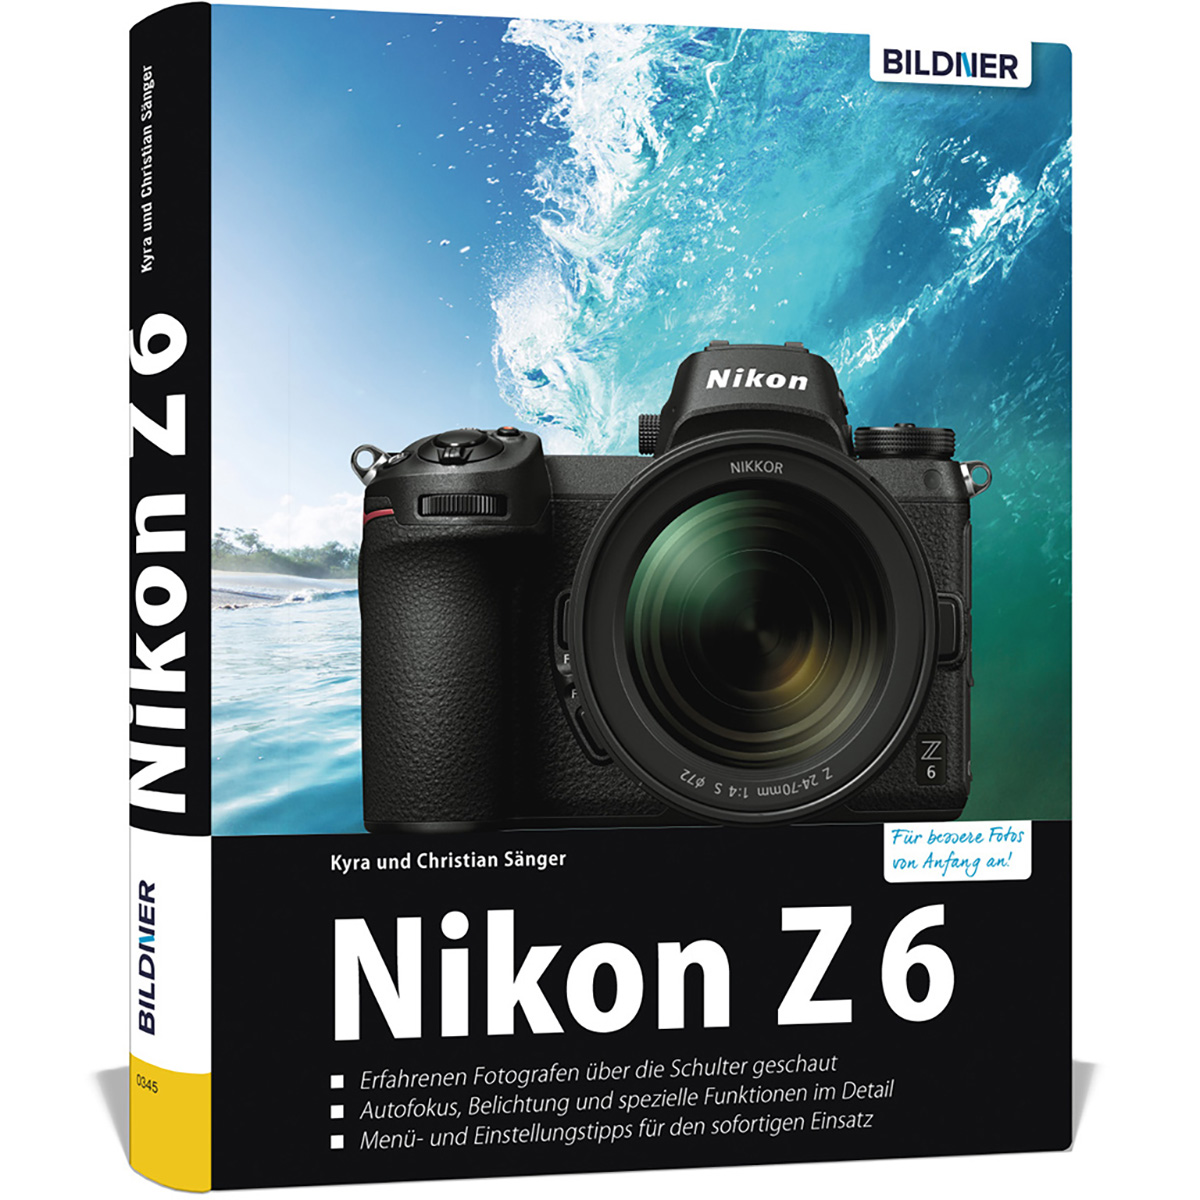 Nikon Z6 - Das umfangreiche Kamera Ihrer Praxisbuch zu